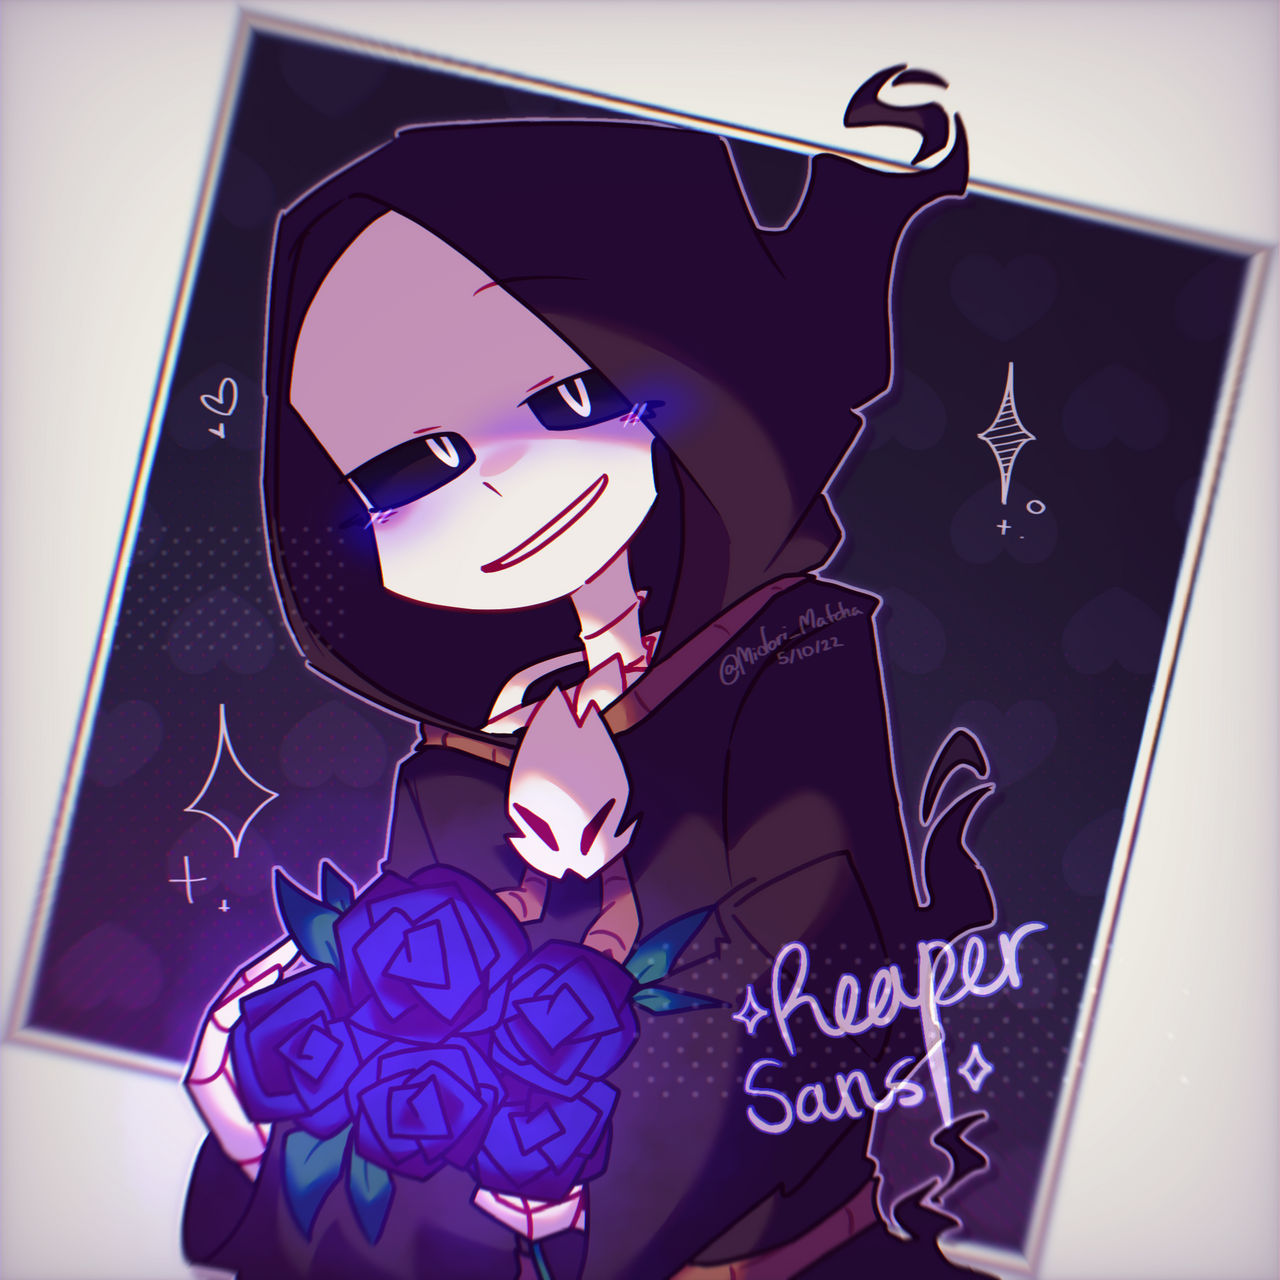 Reaper-Sans--_ on Scratch